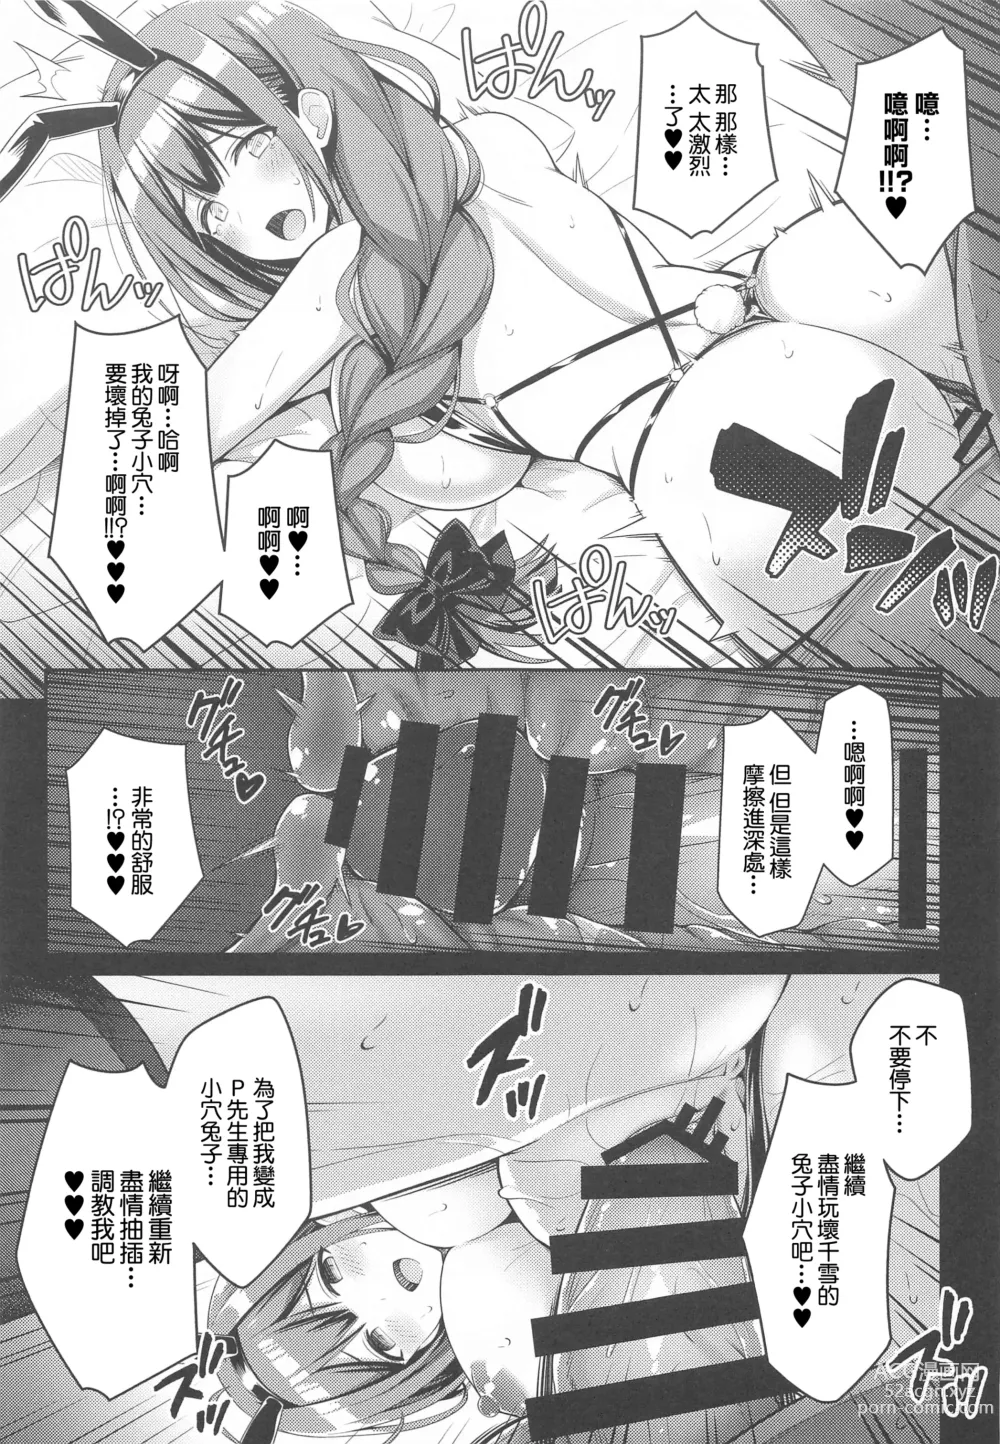 Page 12 of doujinshi 283 Kaiinsei Koukyuu Chijo Toku SS++ Himitsu Chika Idol Bunny Club -Chiyuki-